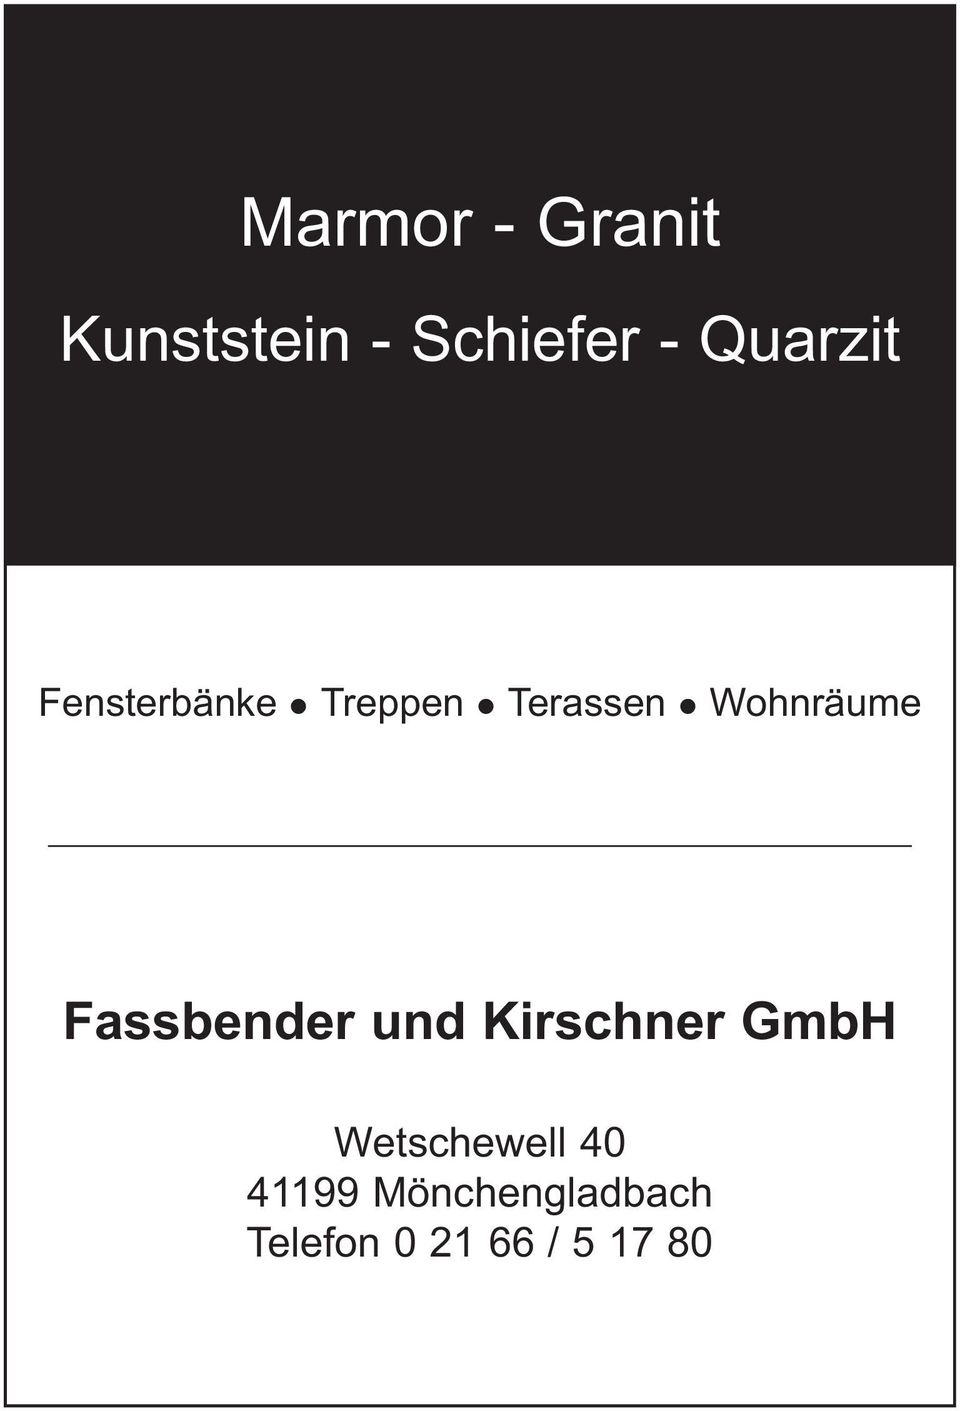 Wohnräume Fassbender und Kirschner GmbH